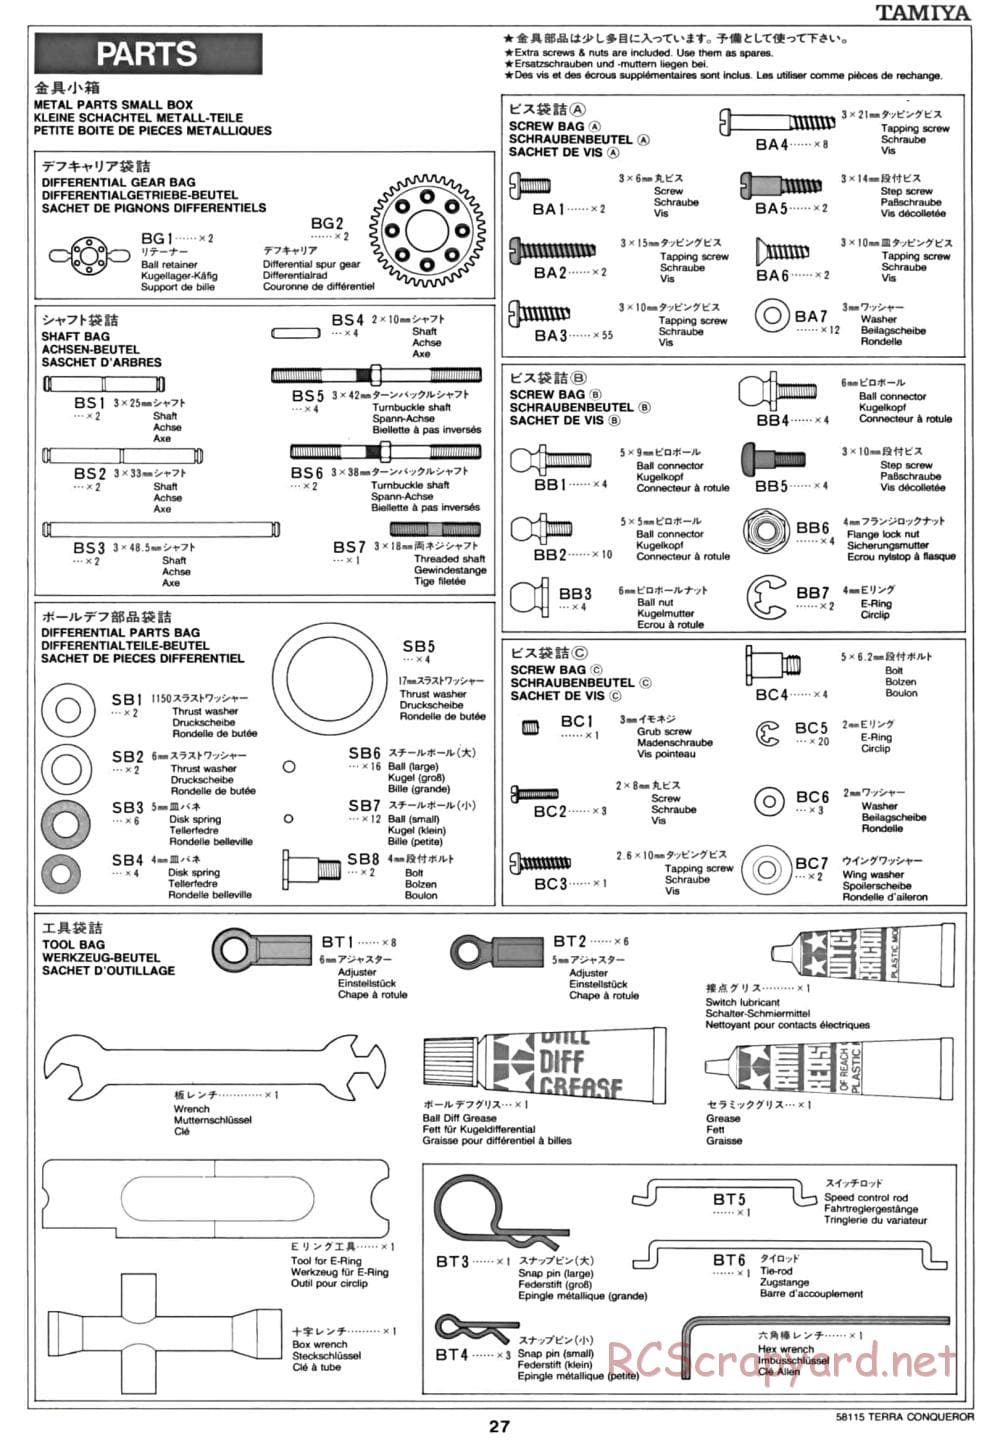 Tamiya - Terra Conqueror Chassis - Manual - Page 27